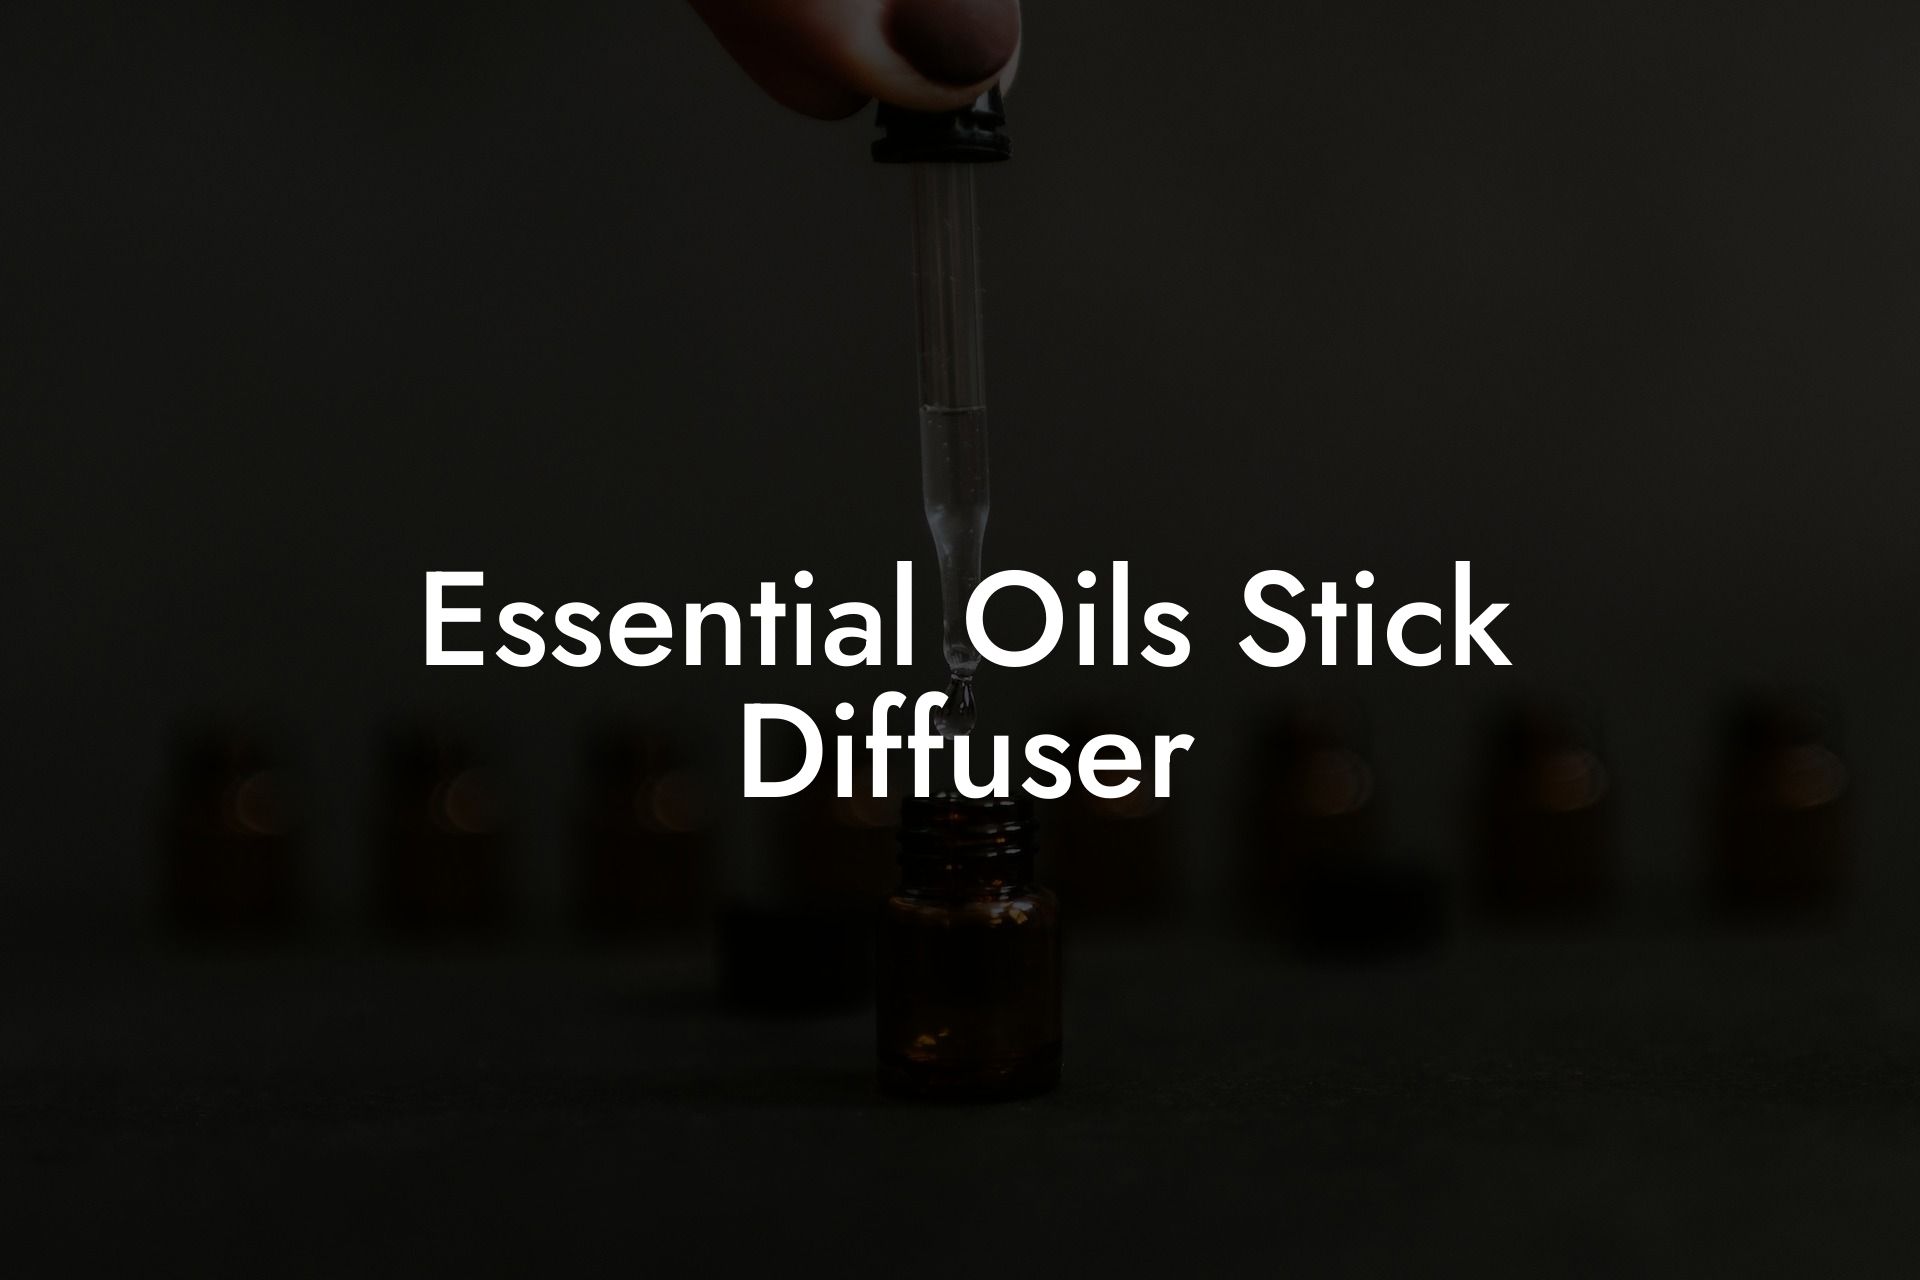 Essential Oils Stick Diffuser